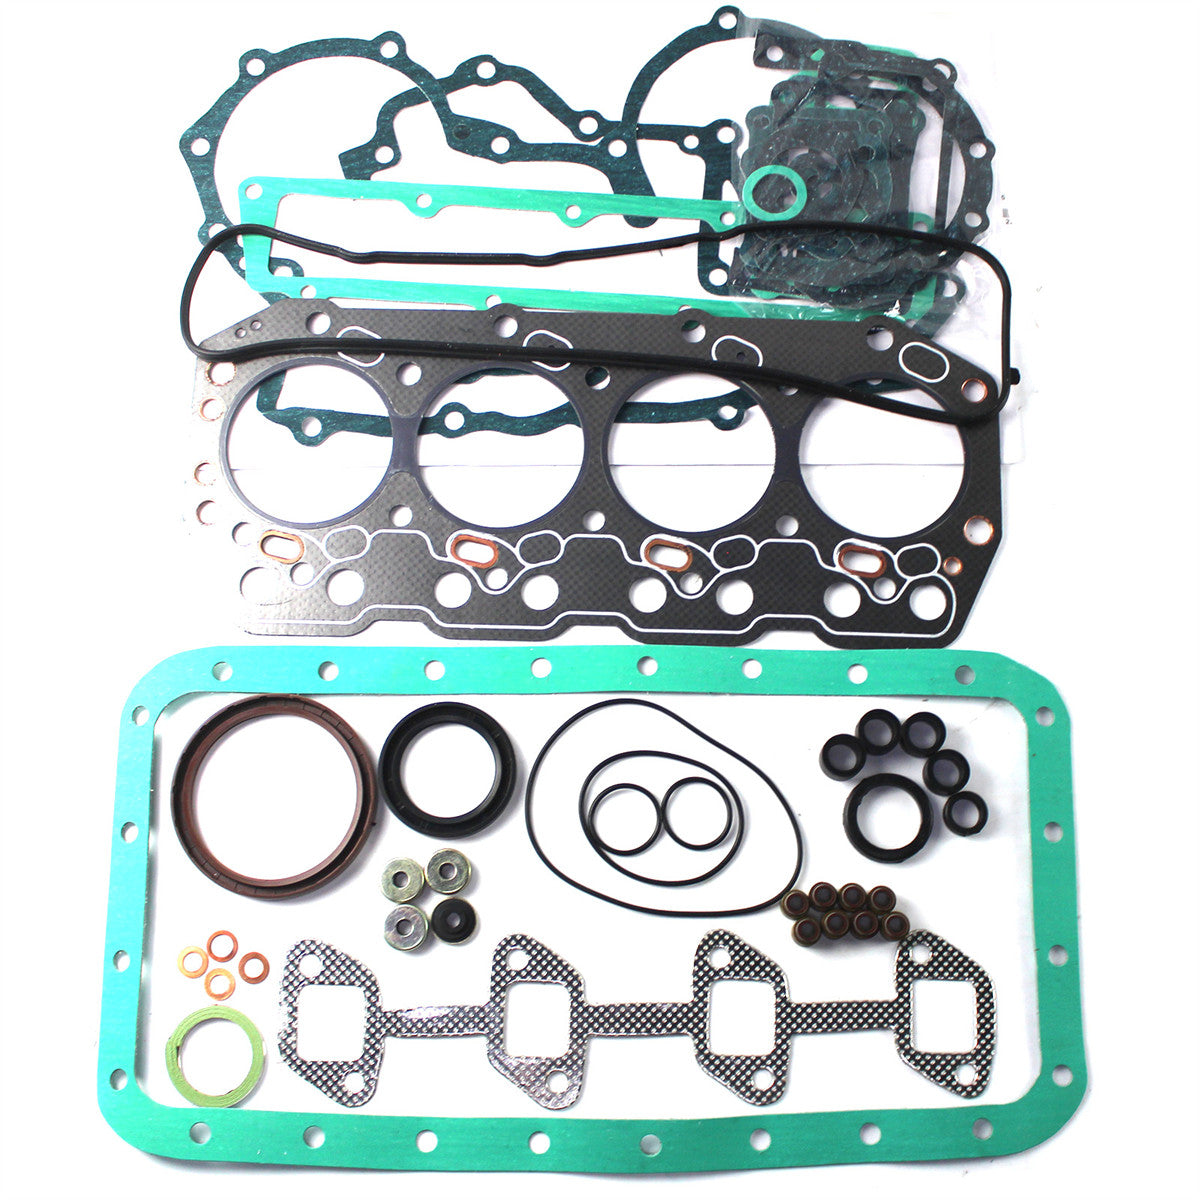 1Z Engine Gasket Kit for Toyota 5FD23 5FD20 5FD25 Forklift Truck - Sinocmp